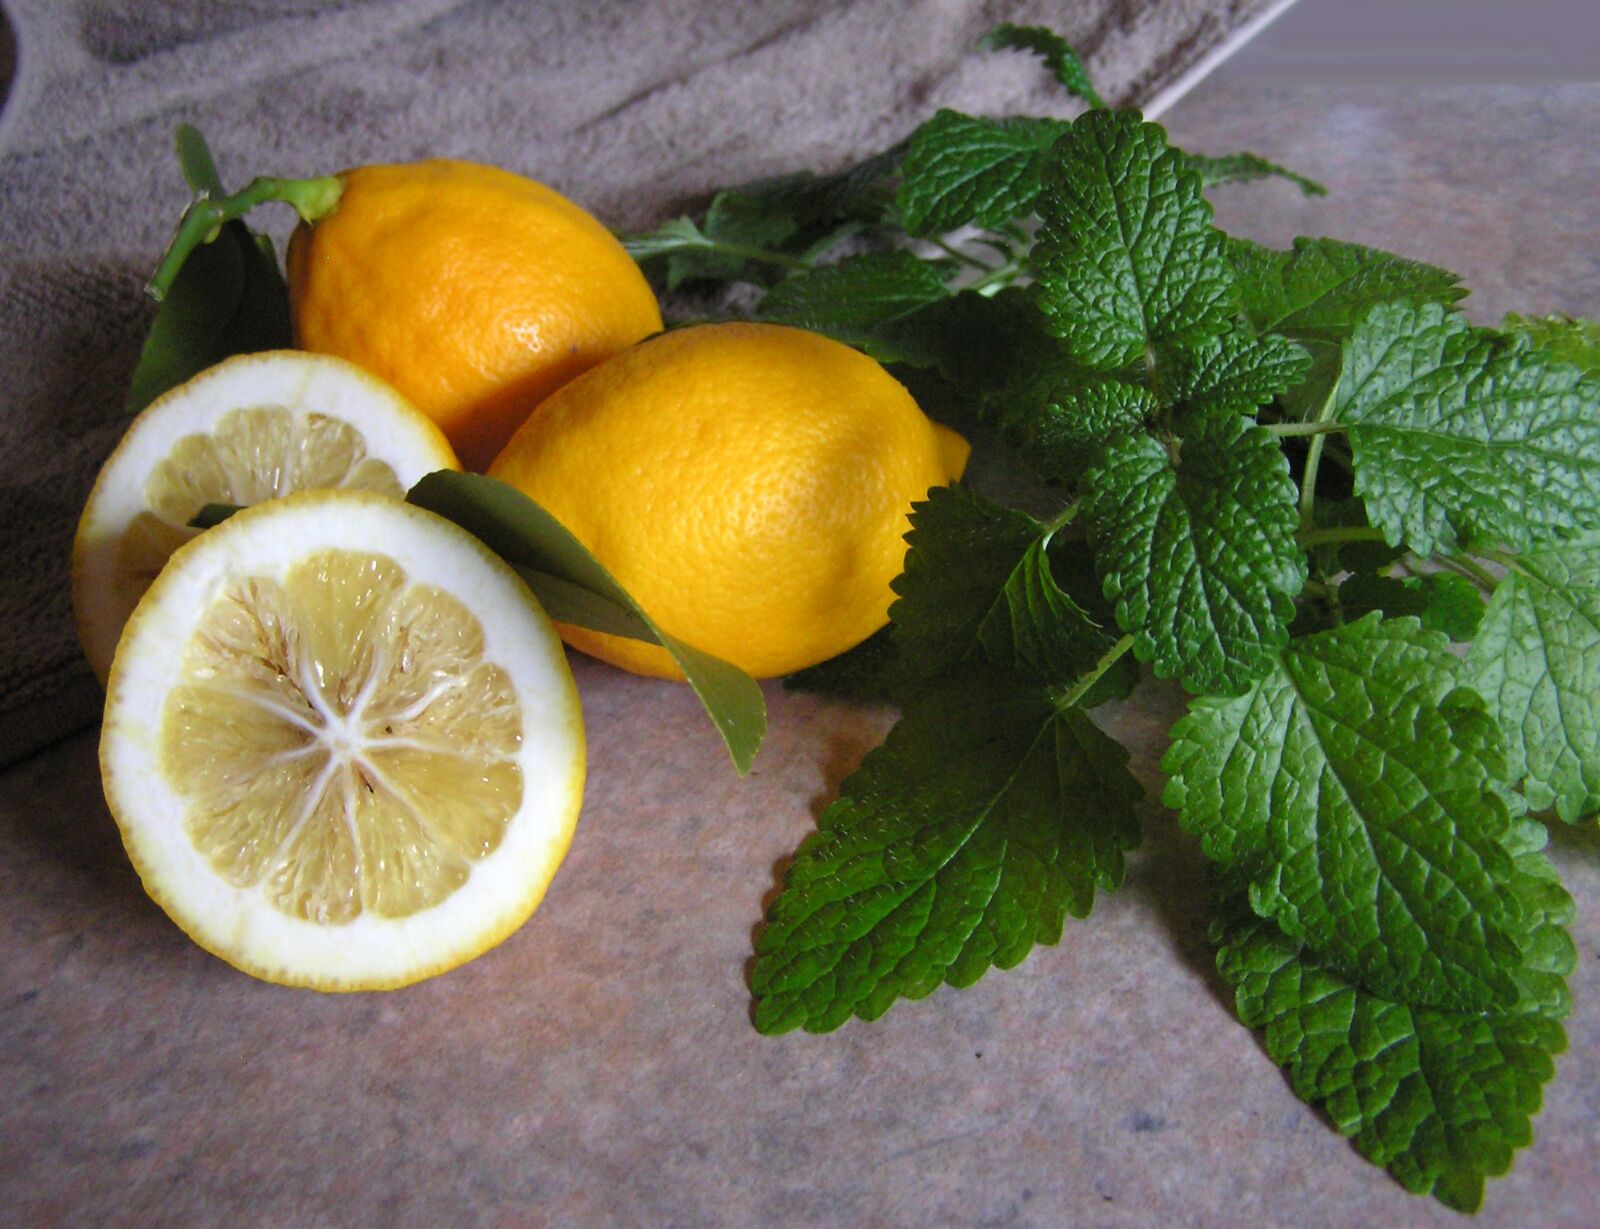 Olympus C750UZ sample photo. Lemons, citrus, fruit photography